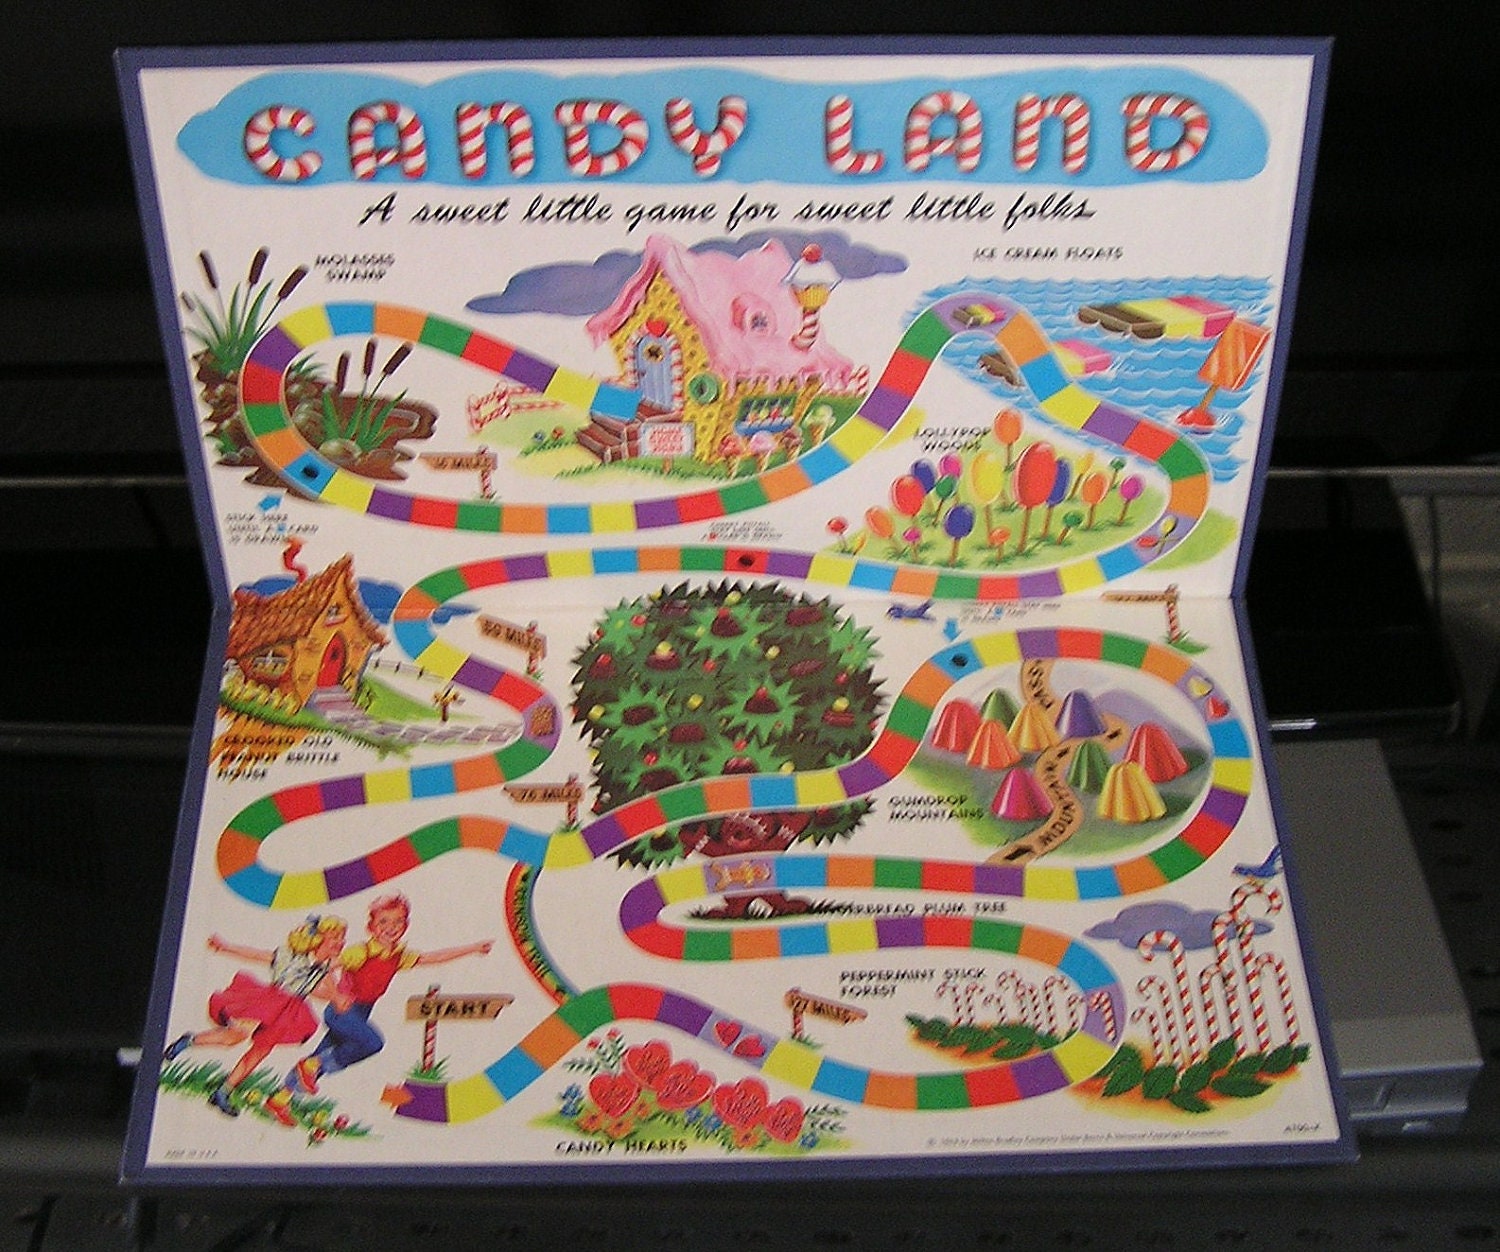 Candy Lane Game